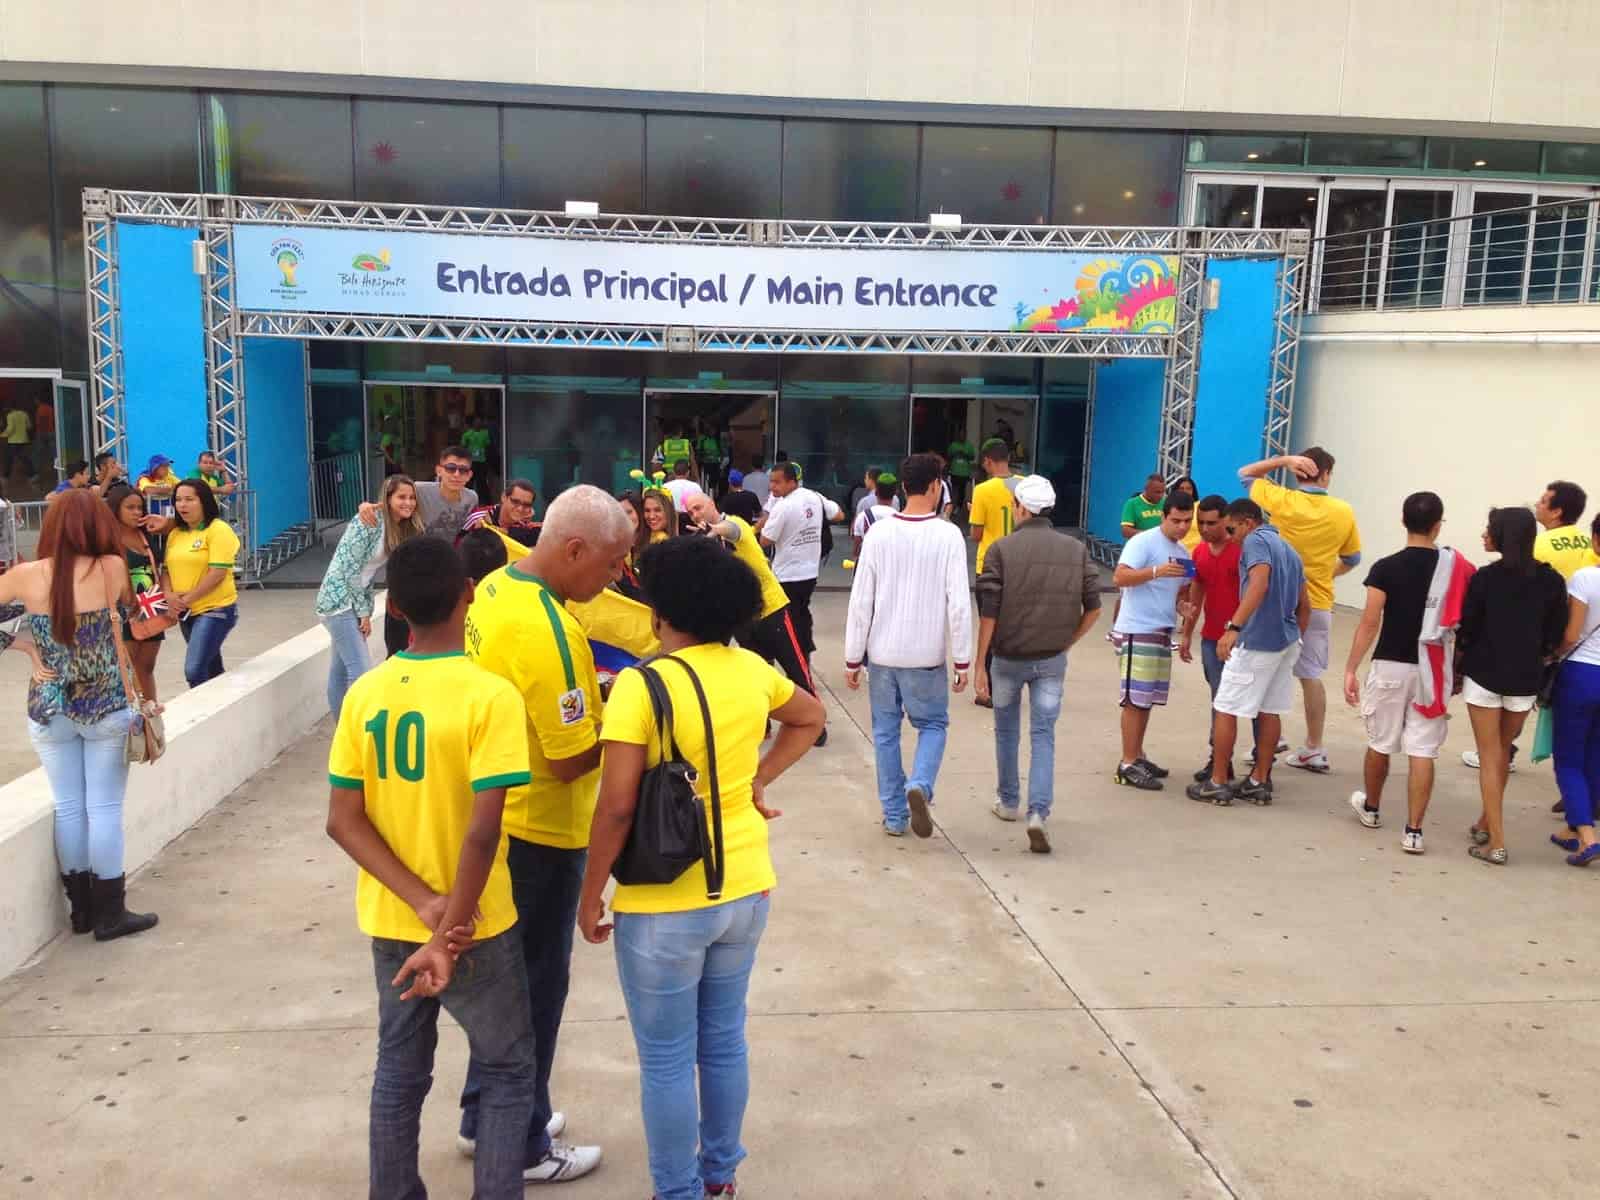 FIFA Fan Fest in Belo Horizonte, Brazil 2014 World Cup